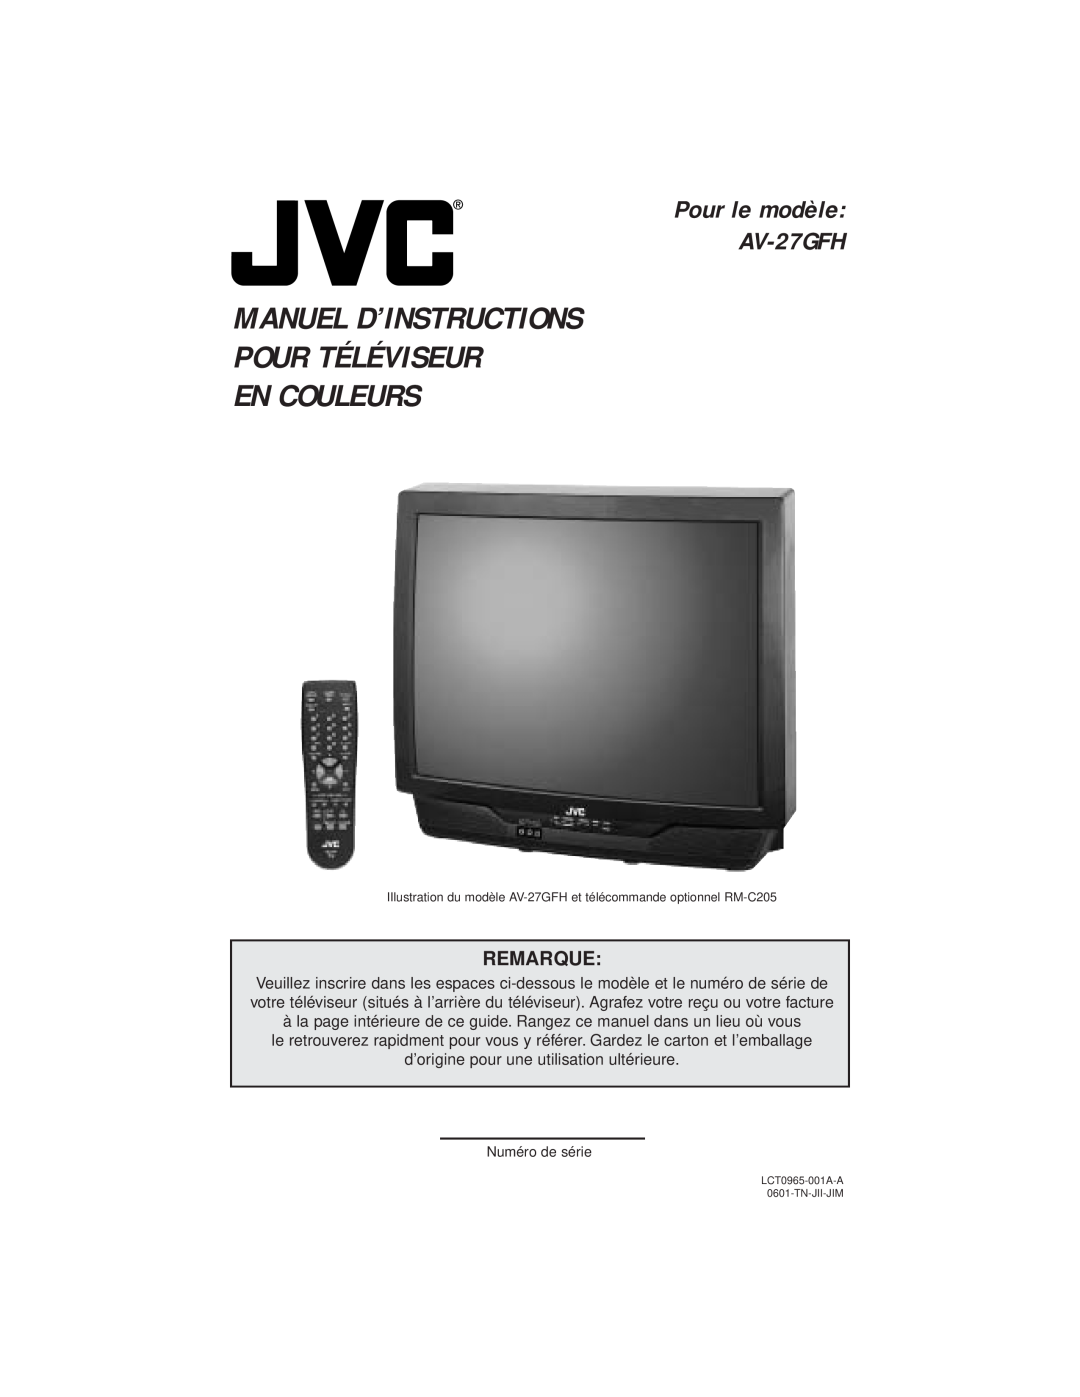 JVC manual Manuel D’Instructions Pour Téléviseur En Couleurs, Pour le modèle AV-27GFH, Remarque 